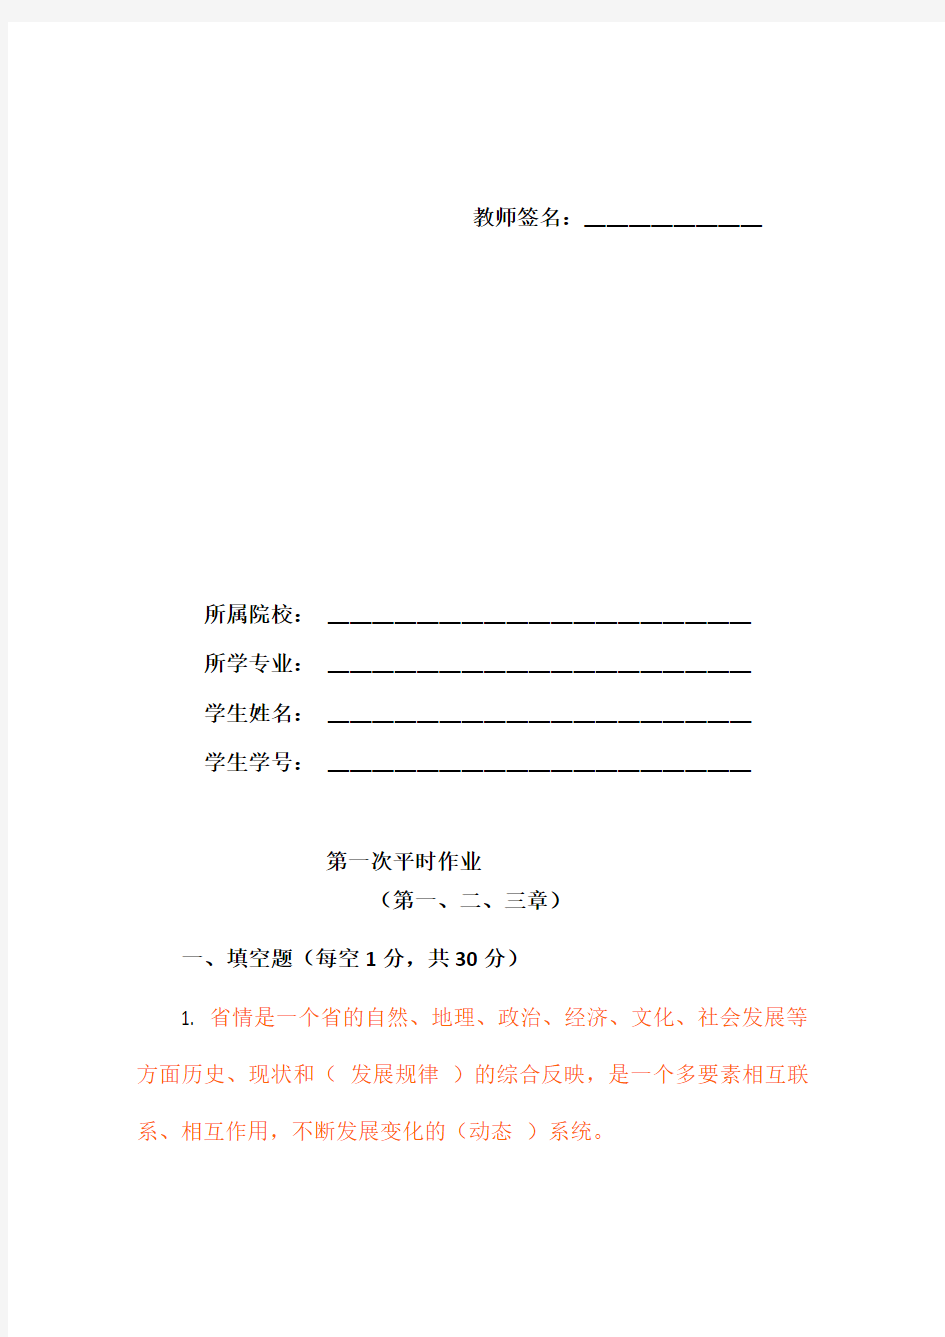 贵州省情(地域文化)第四版平时作业答案(1)